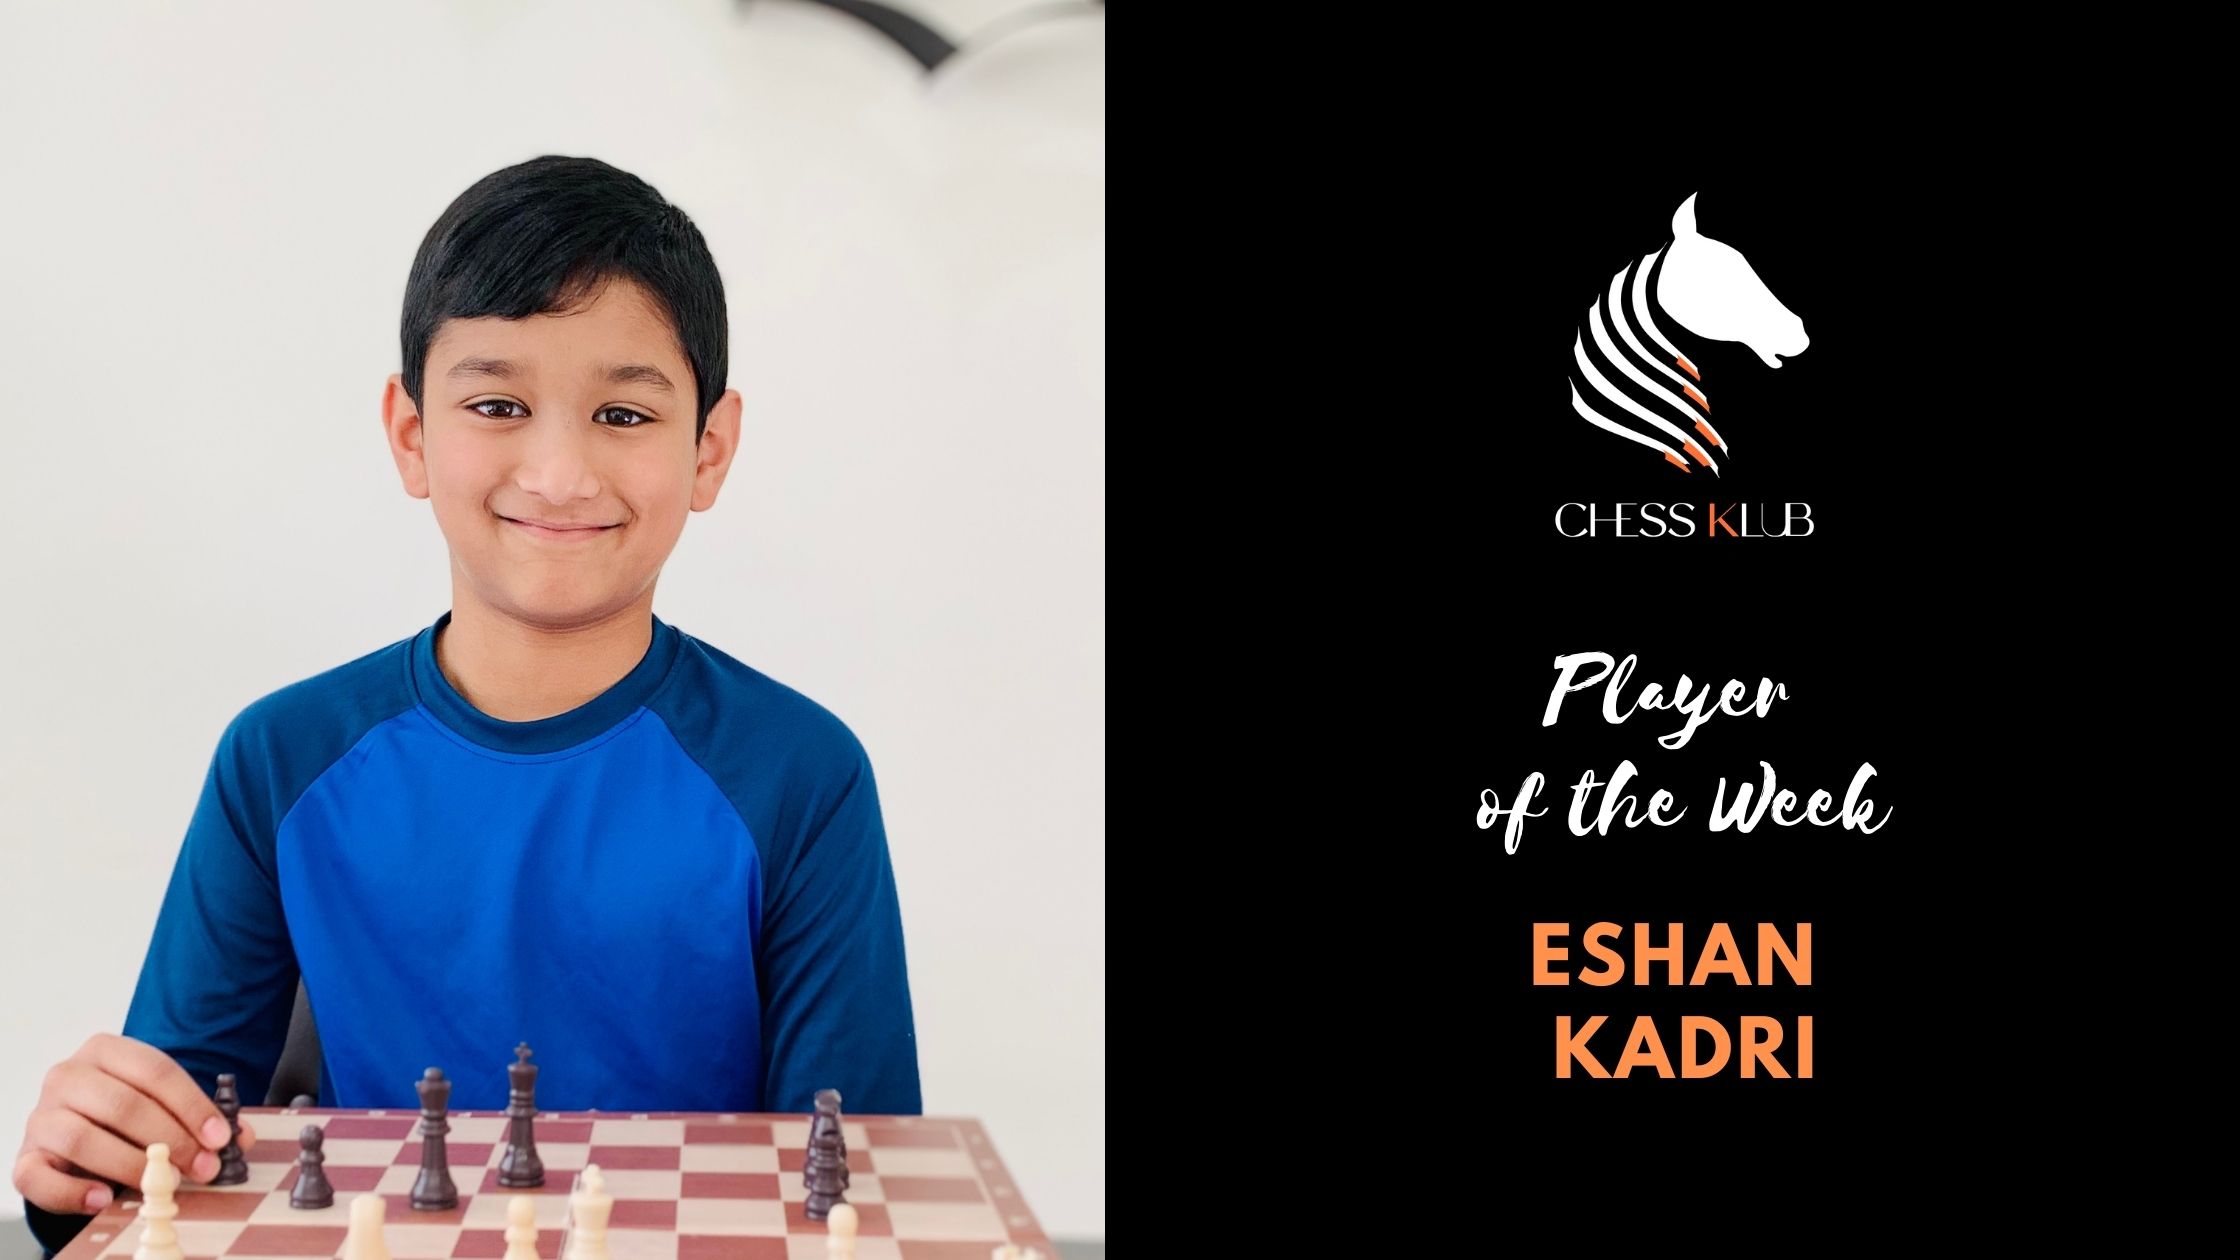 Eshan Kadri - Winner of the Weekly Chess Tournaments